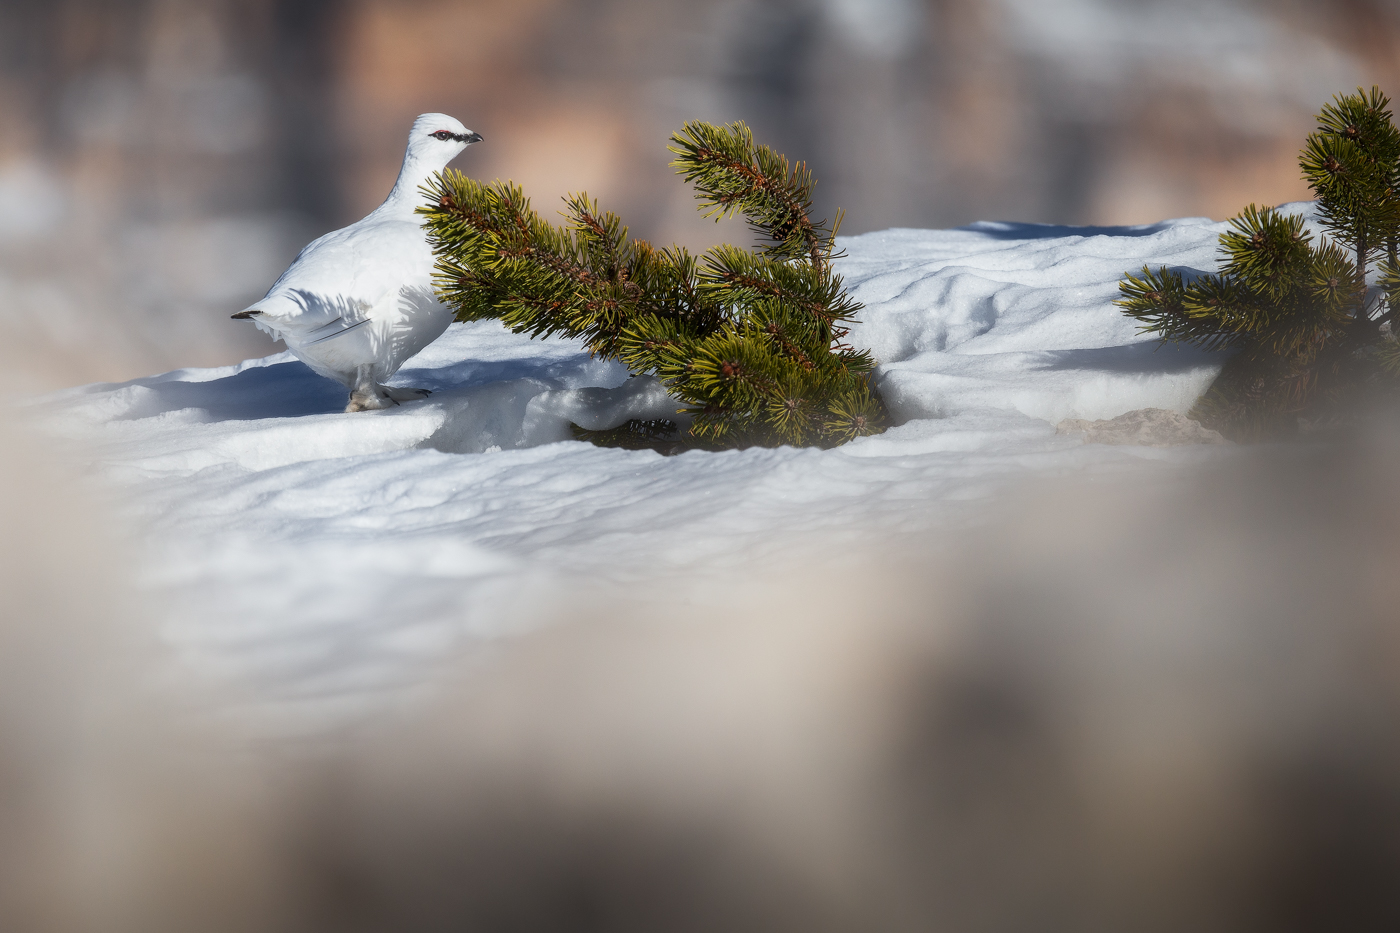 Pernice bianca (Lagopus muta) in passerella nel suo abito invernale. Parco Naturale Tre Cime, Dolomiti di Sesto, Italia.